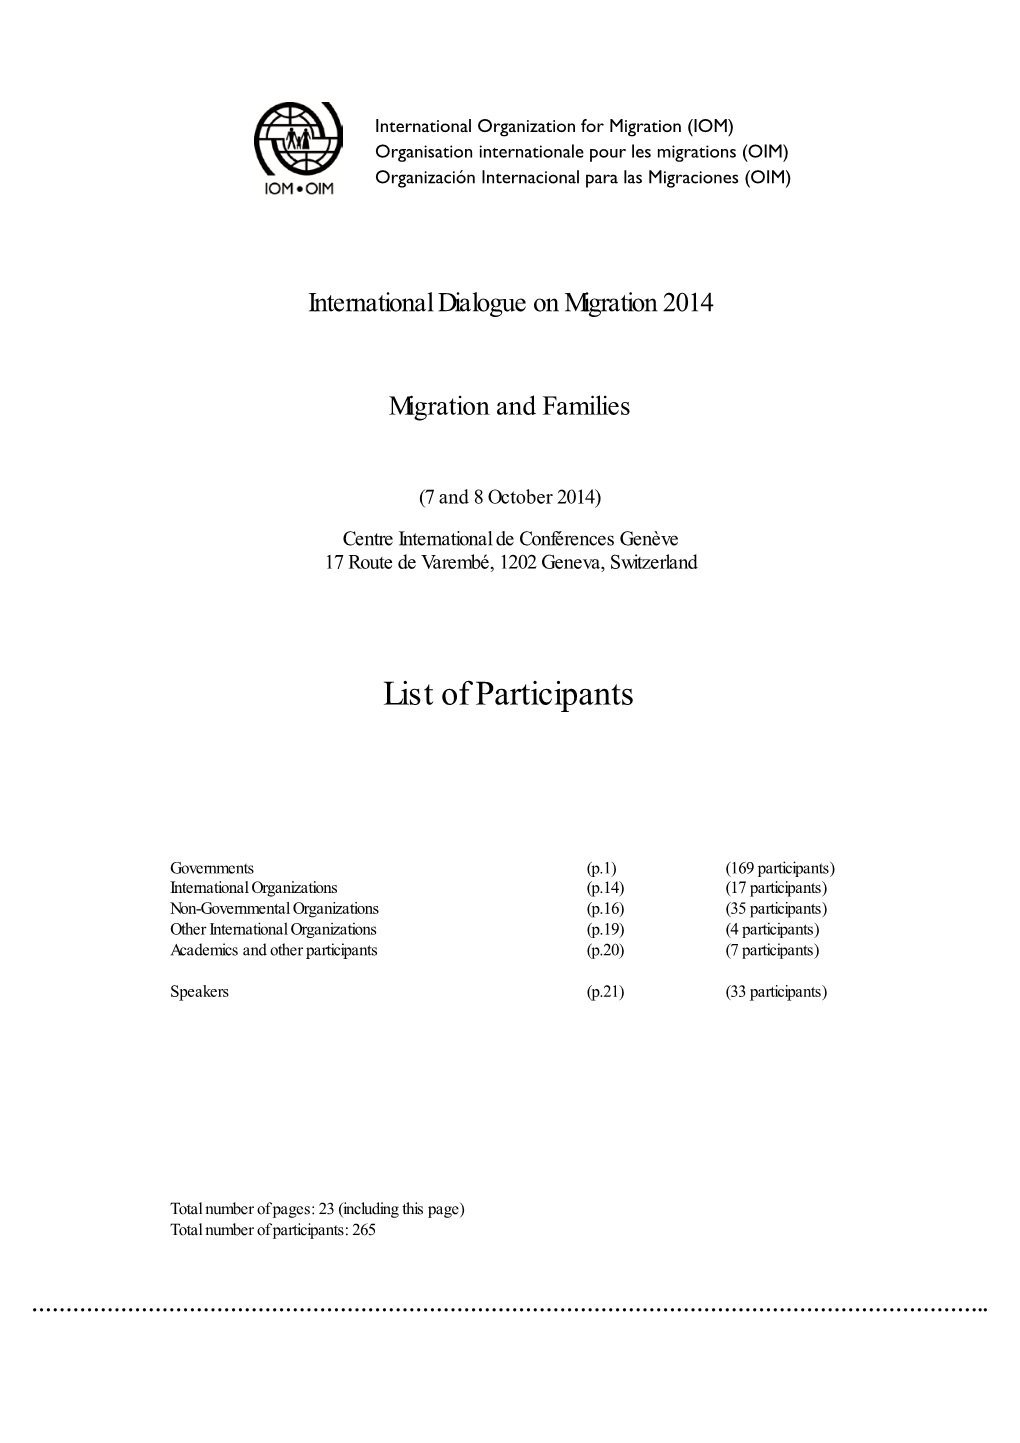 Final List of Participants, IDM October 2014